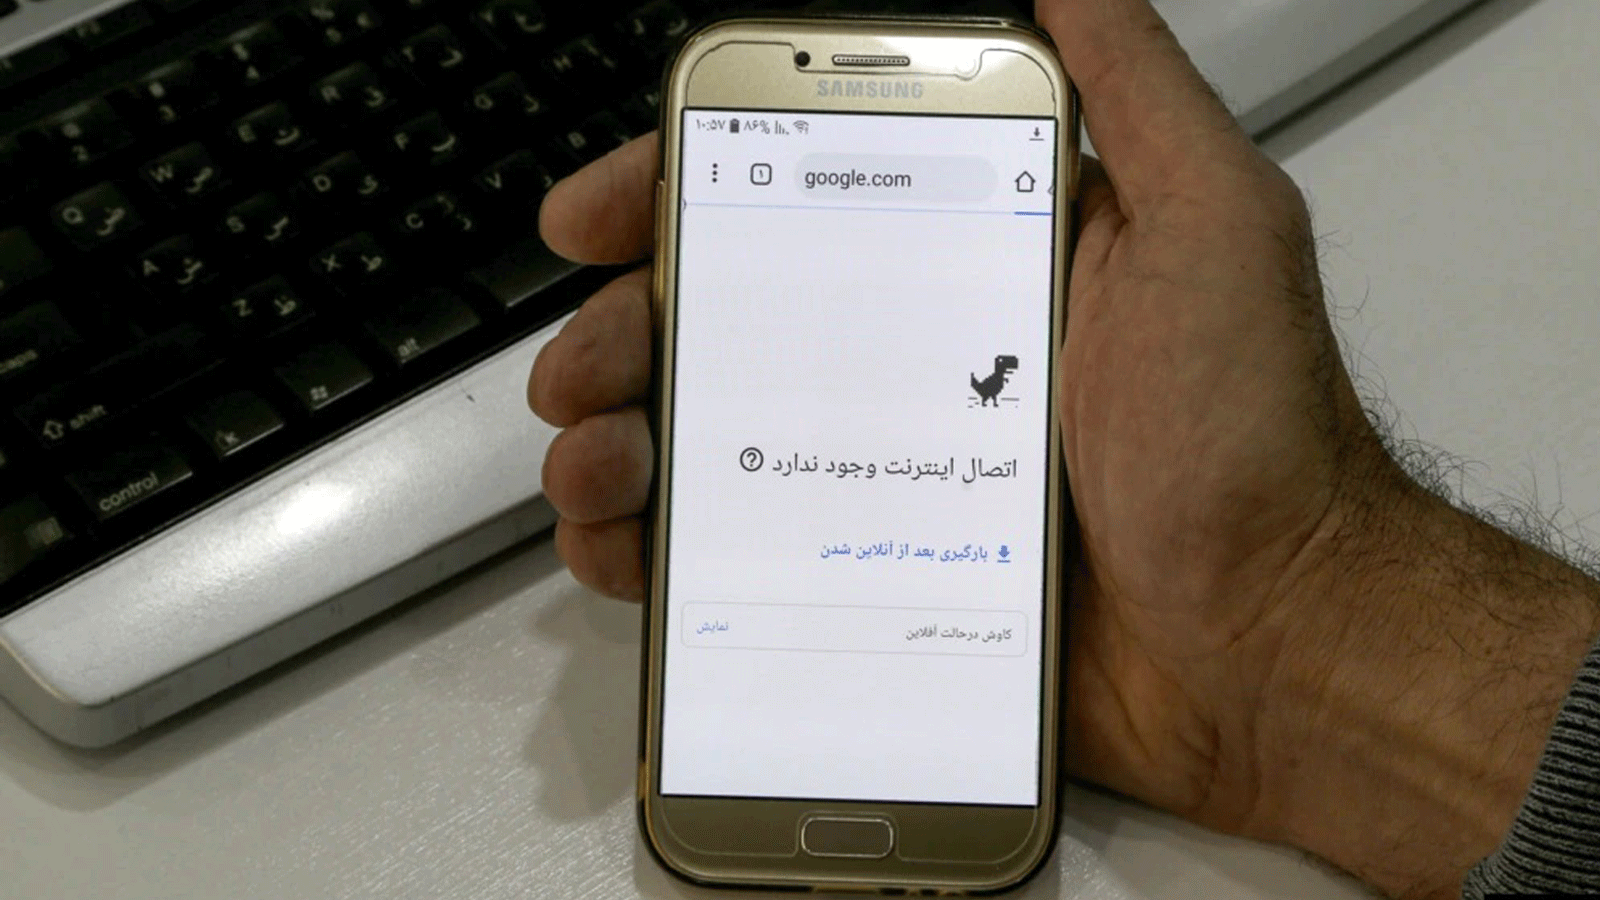 رجلٌ يحمل هاتفًا ذكيًا متصلًا بشبكة WiFi بدون اتصال بالإنترنت في مكتب بطهران في 17 تشرين الثاني/ نوفمبر.